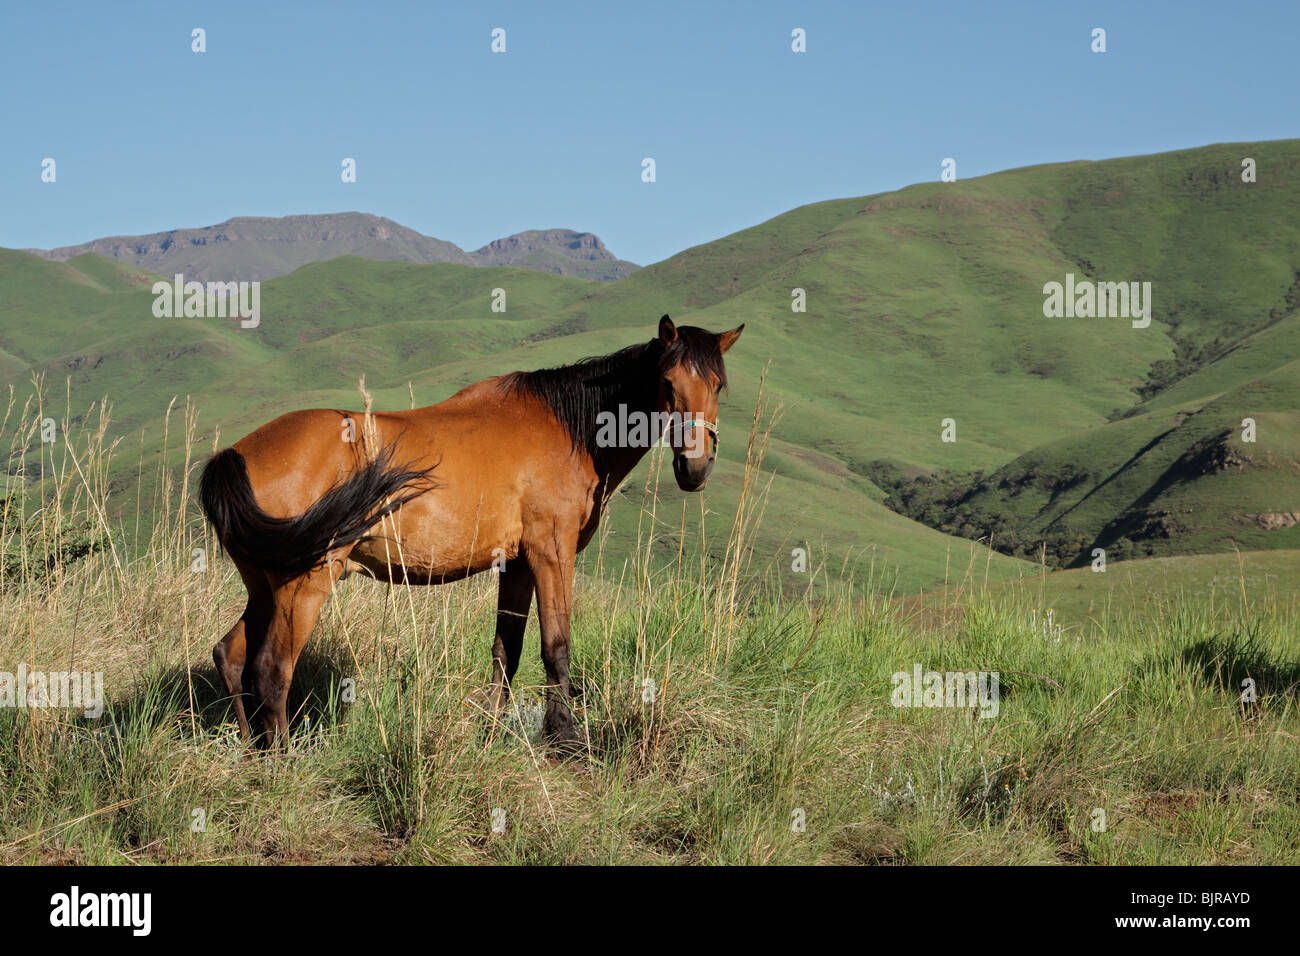 A cavallo nel verde delle colline ai piedi delle montagne di Drakensberg, Sud Africa Foto Stock